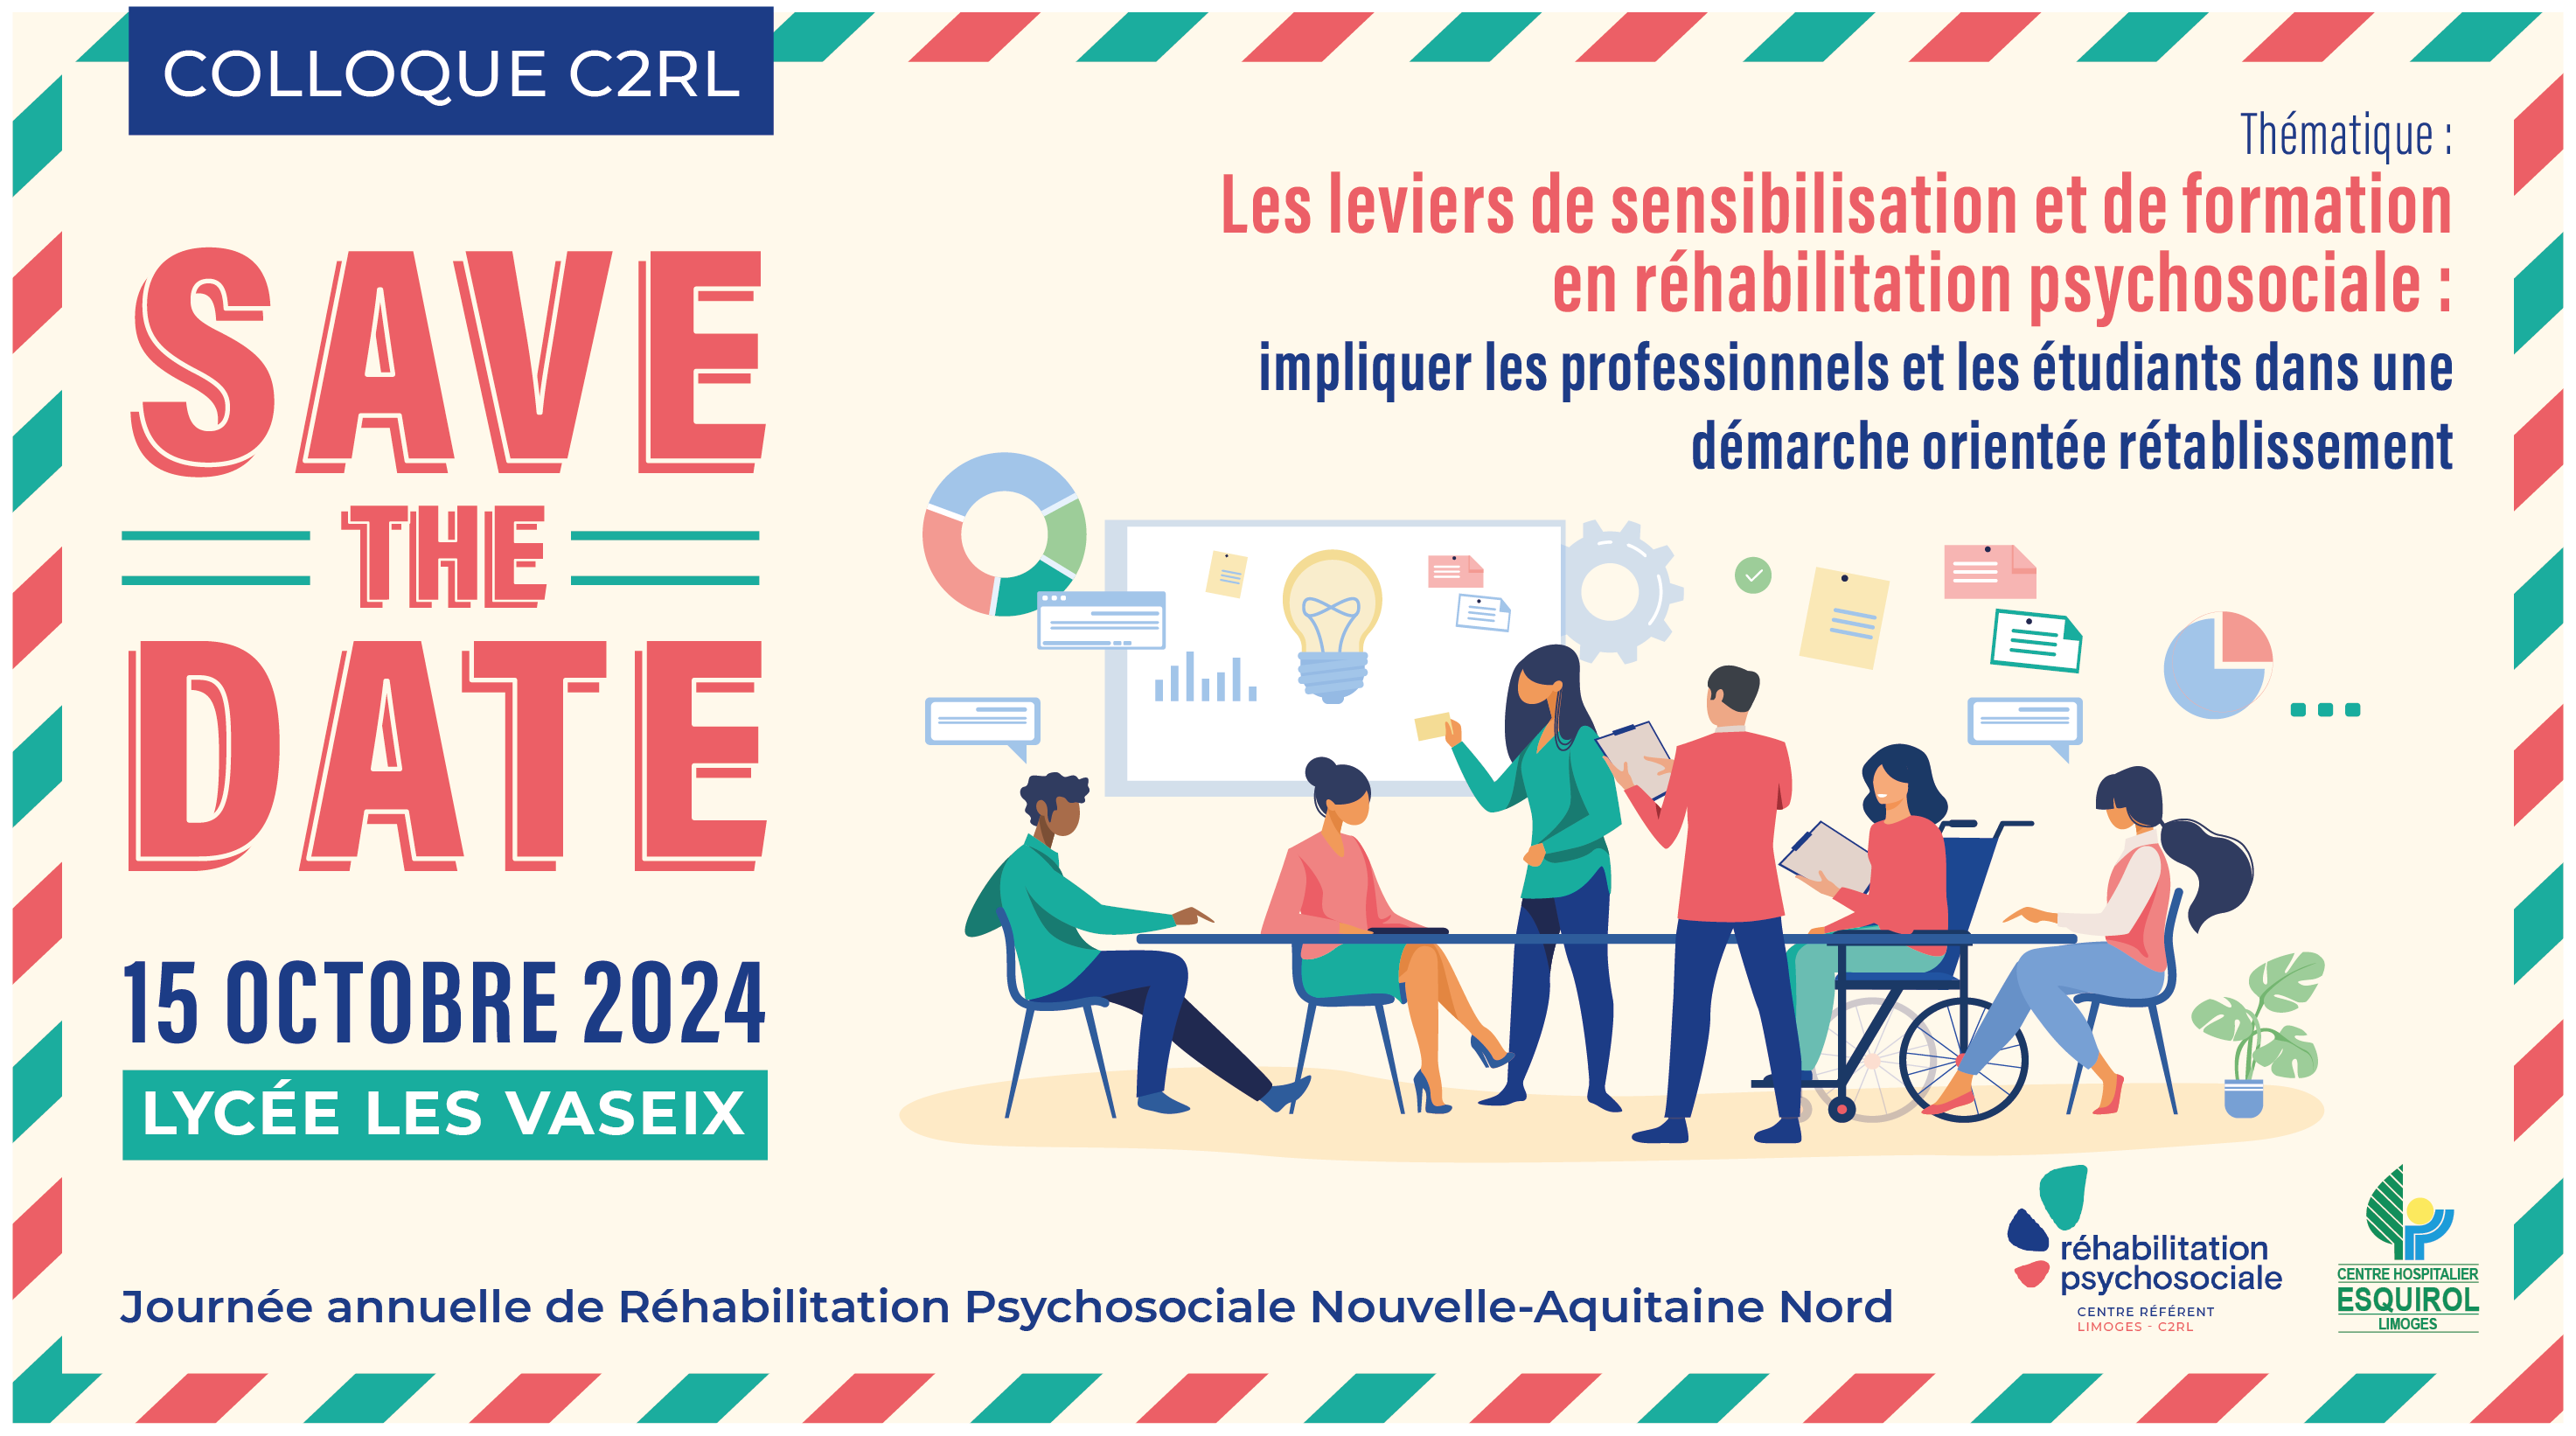 Save the date : 15 octobre 2024 au Lycée des VAseix: journée annuelle de réhabilitation psychosociale Nouvelle Aquitaine Nord.